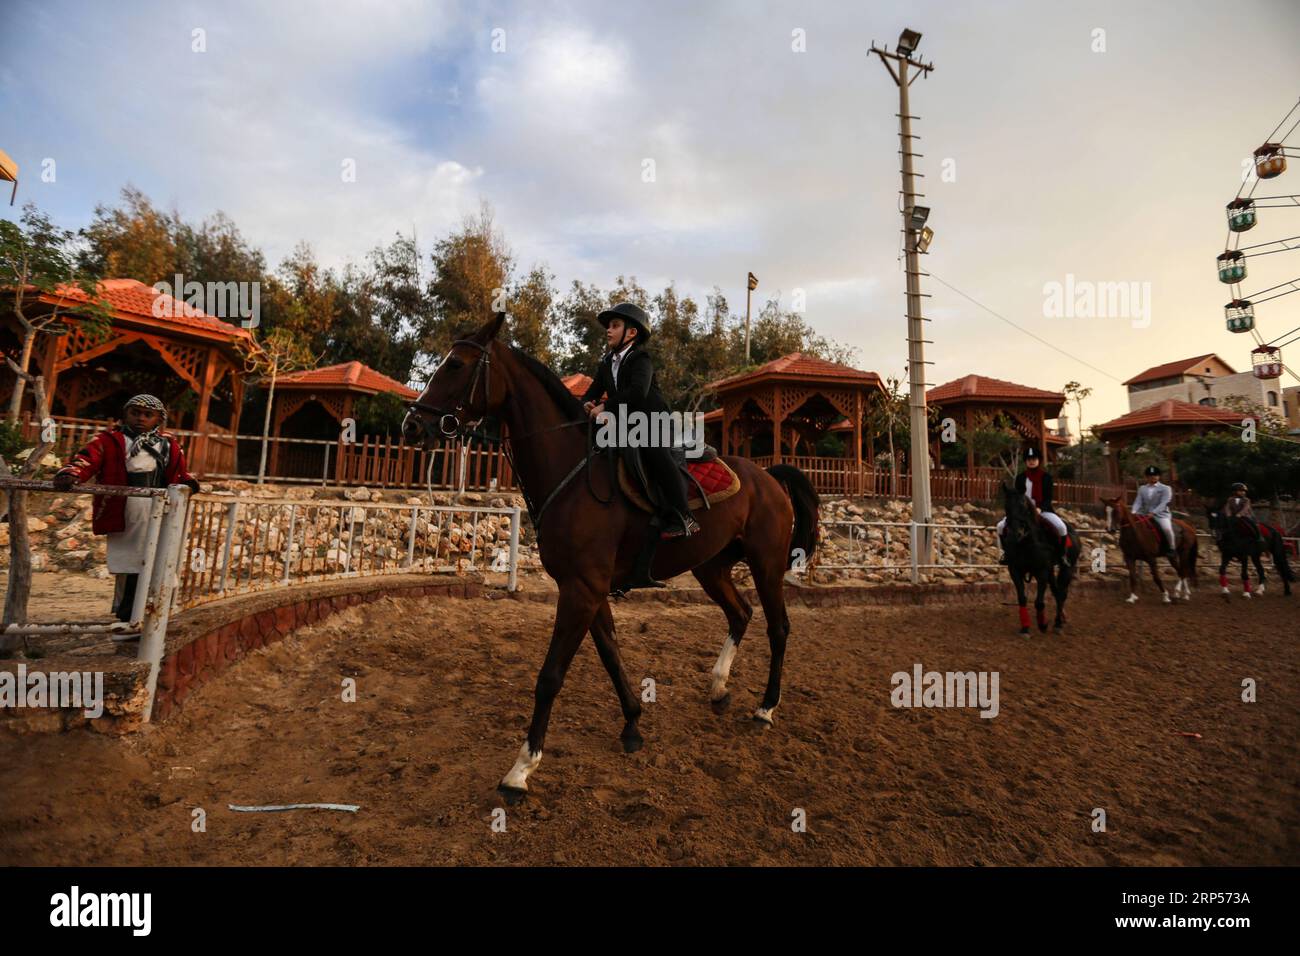 (181201) -- GAZA, 1 décembre 2018 -- des Palestiniens montent à cheval lors d'une compétition équestre dans la ville de Gaza, le 29 novembre 2018. La Fédération équestre palestinienne à Gaza a organisé jeudi soir une compétition locale pour franchir les barrières sous le titre Will and Hope, marquant la prochaine Journée internationale des personnes handicapées, qui tombe le 3 décembre de chaque année. Au total, 35 participants et leurs familles se sont joints à un rassemblement public de personnes handicapées dans un club équestre dans le nord de la ville de Gaza pour montrer leur soutien aux personnes handicapées. POUR ALLER AVEC la fonctionnalité : l'équitation se développe amon Banque D'Images